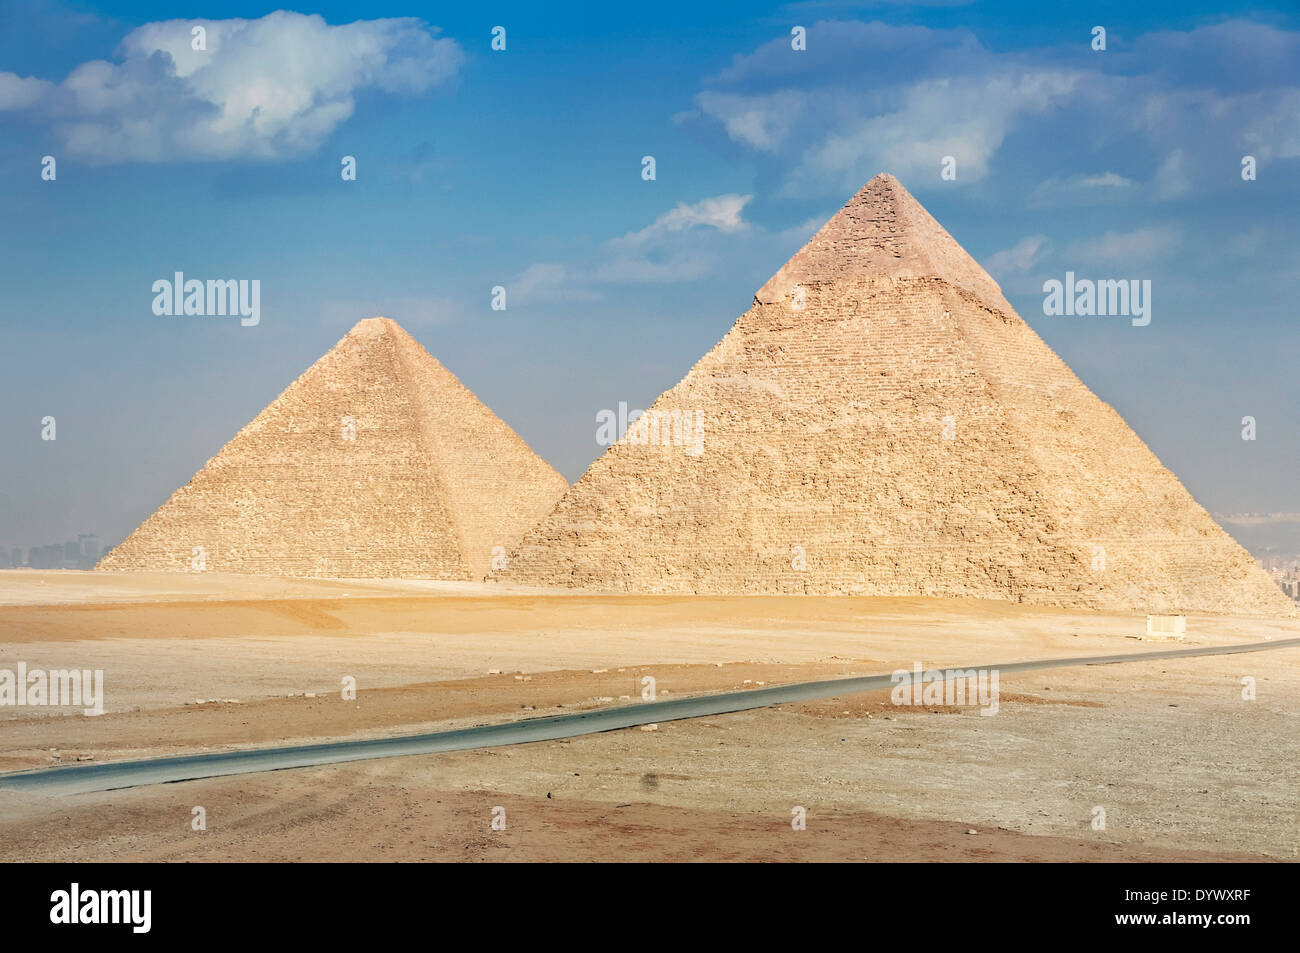 Piramide di Khufu e piramide di Khafre - due delle famose Piramidi di Giza in Egitto. Foto Stock